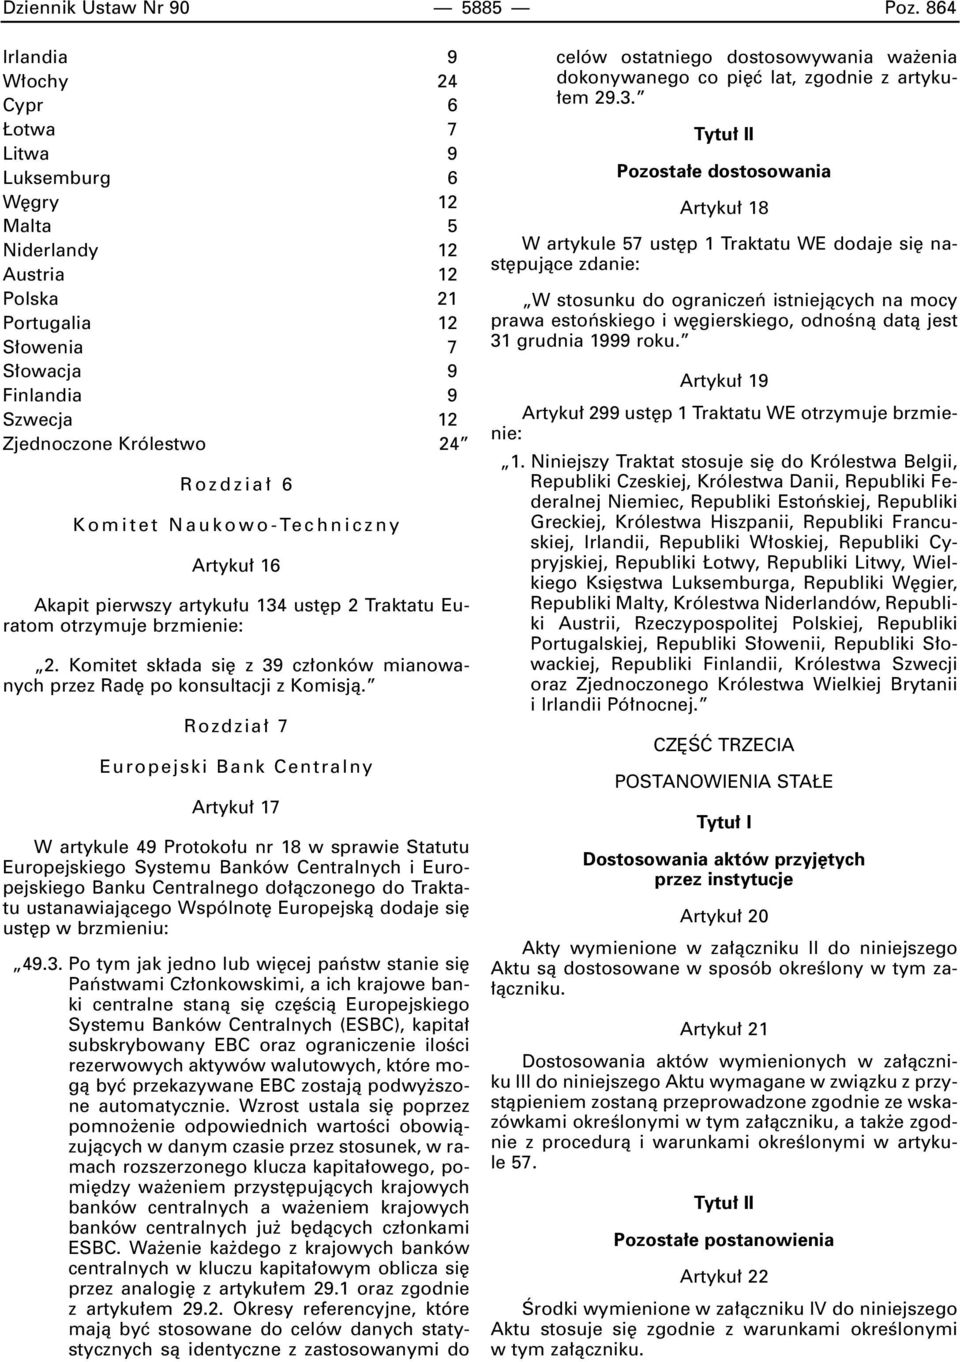 Rozdzia 6 Komitet Naukowo-Techniczny Artyku 16 Akapit pierwszy artyku u 134 ust p 2 Traktatu Euratom otrzymuje brzmienie: 2.